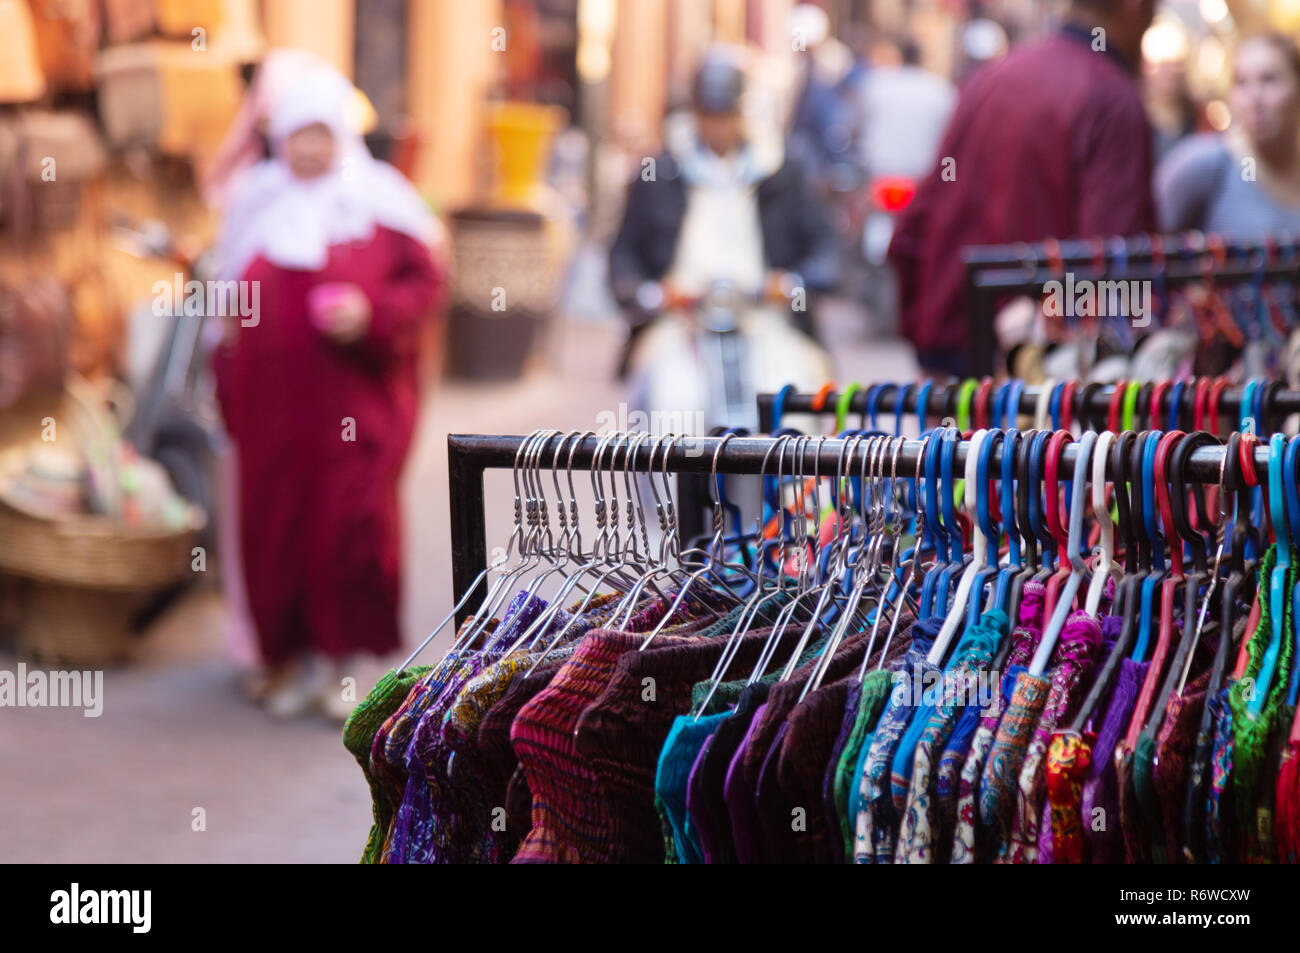 Marrakesch Marokko, Street Scene in Marrakesch Medina, bunte Kleidung für den Vertrieb und die lokale Bevölkerung im Souk, Marrakesch, Marokko Nordafrika Stockfoto